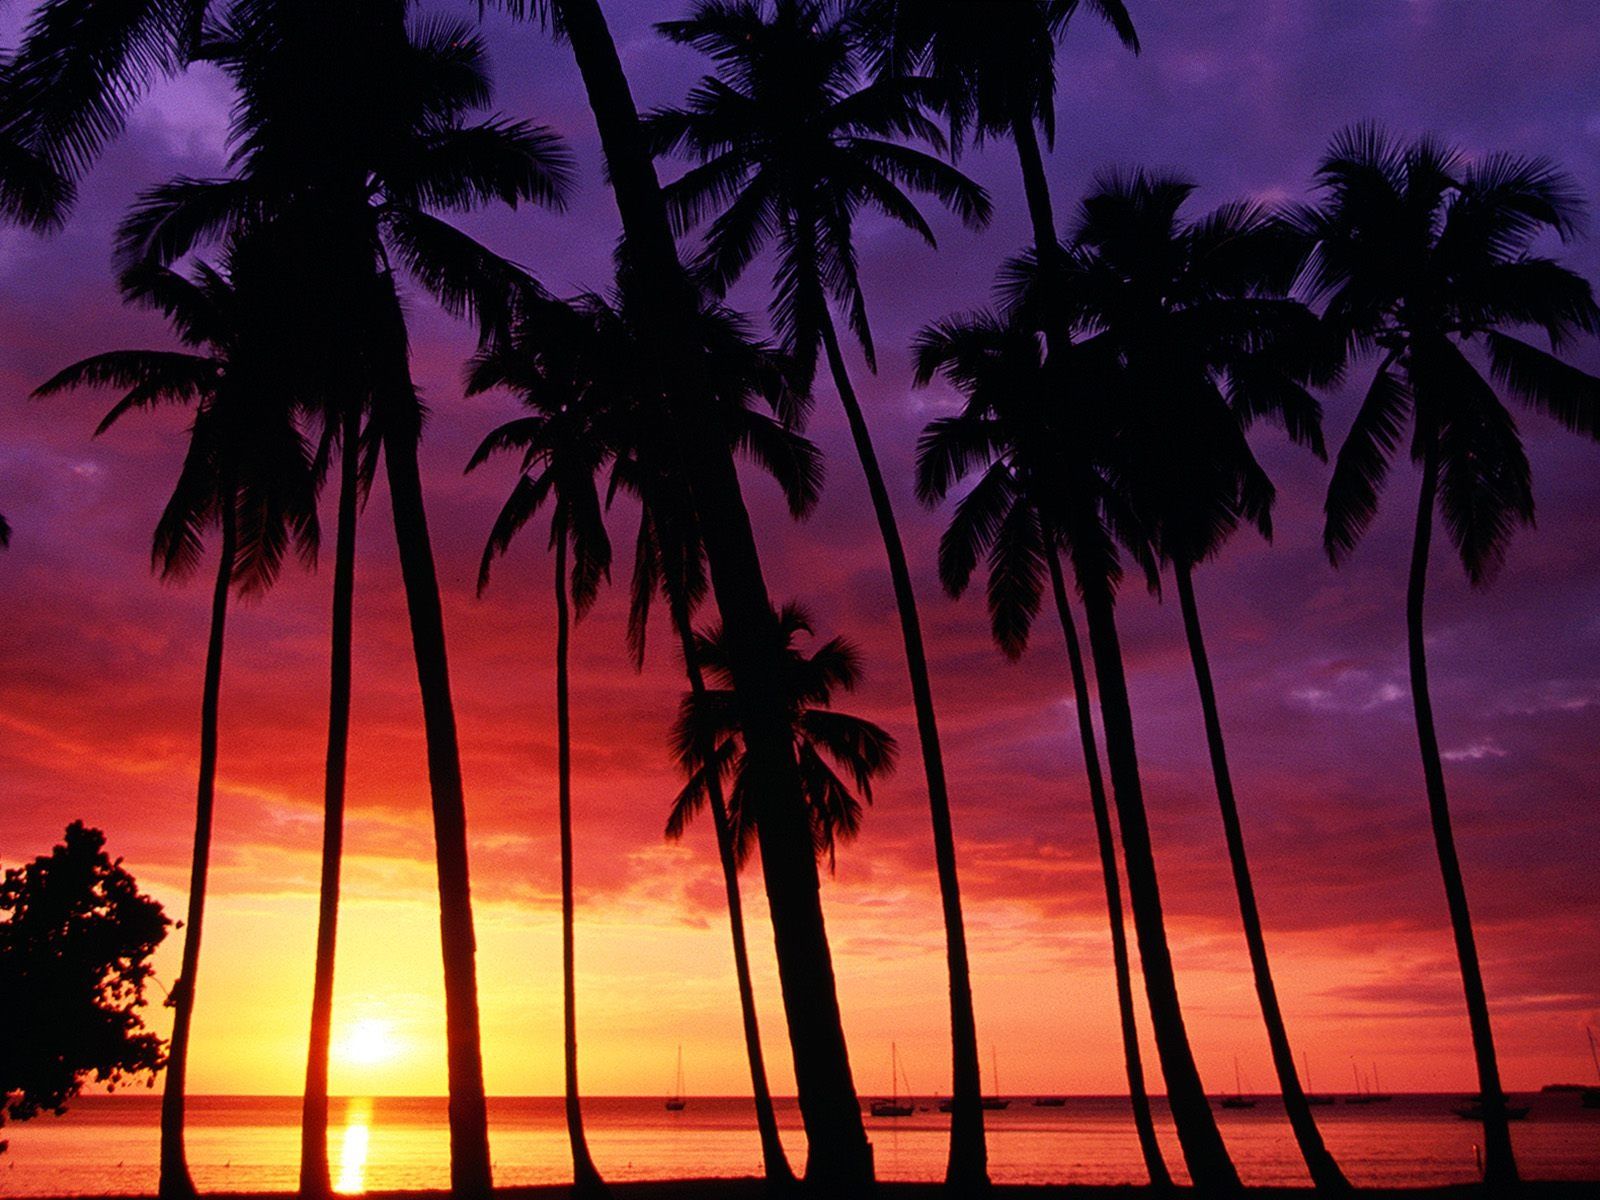 Sunset Spectacular Wallpapers en formato jpg para descarga gratuita